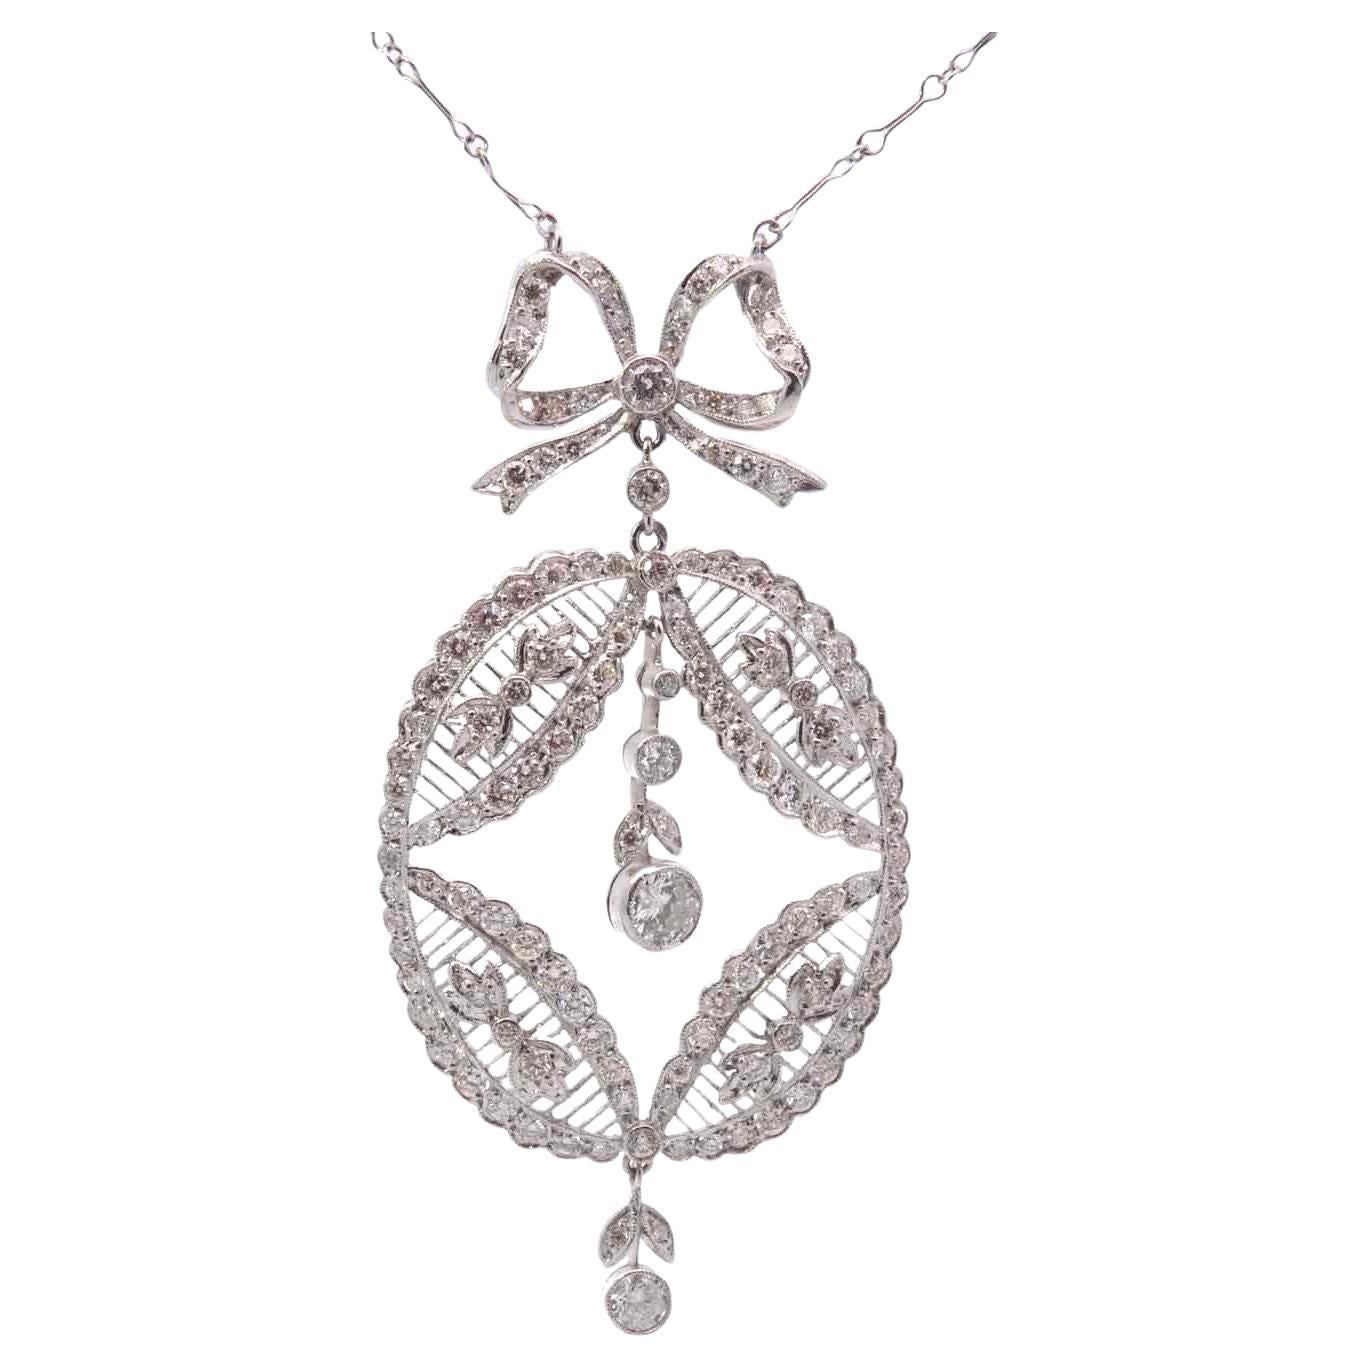 1900 diamonds necklace in platinum